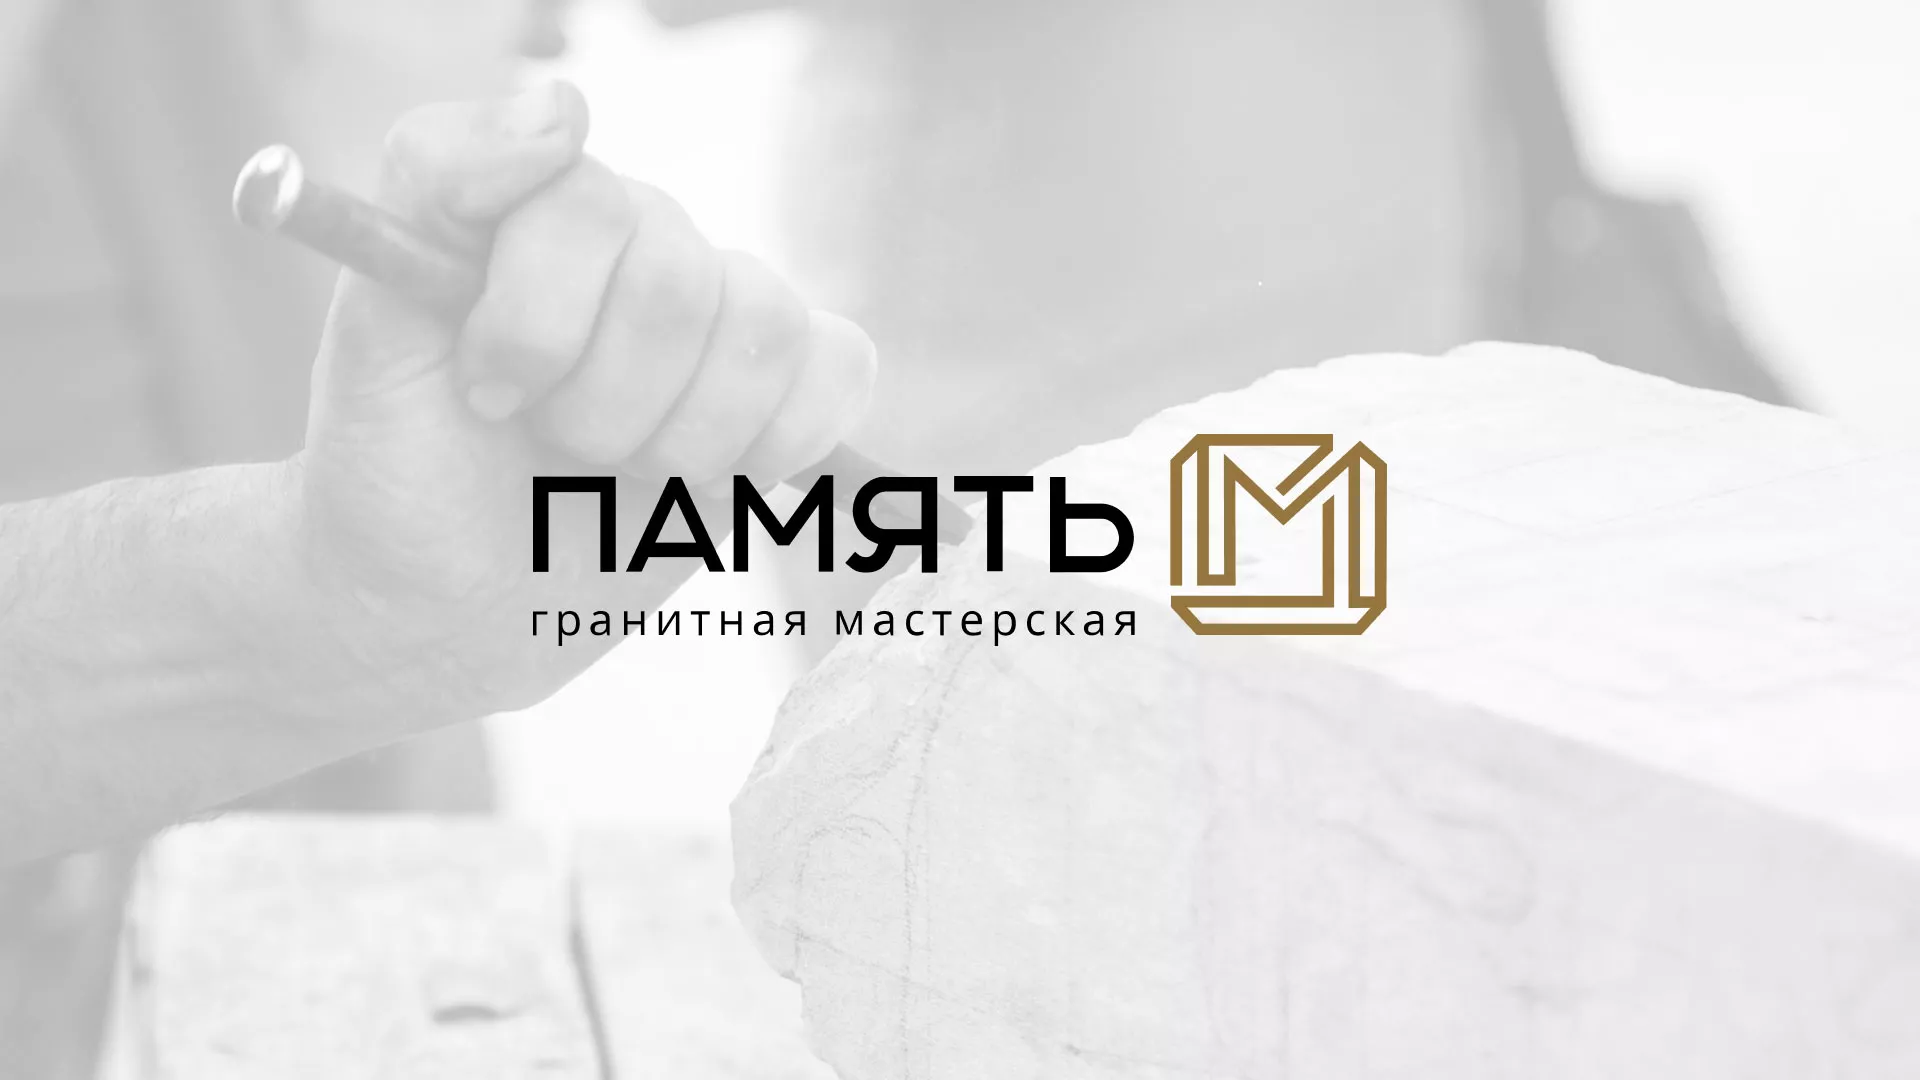 Разработка логотипа и сайта компании «Память-М» в Пушкине